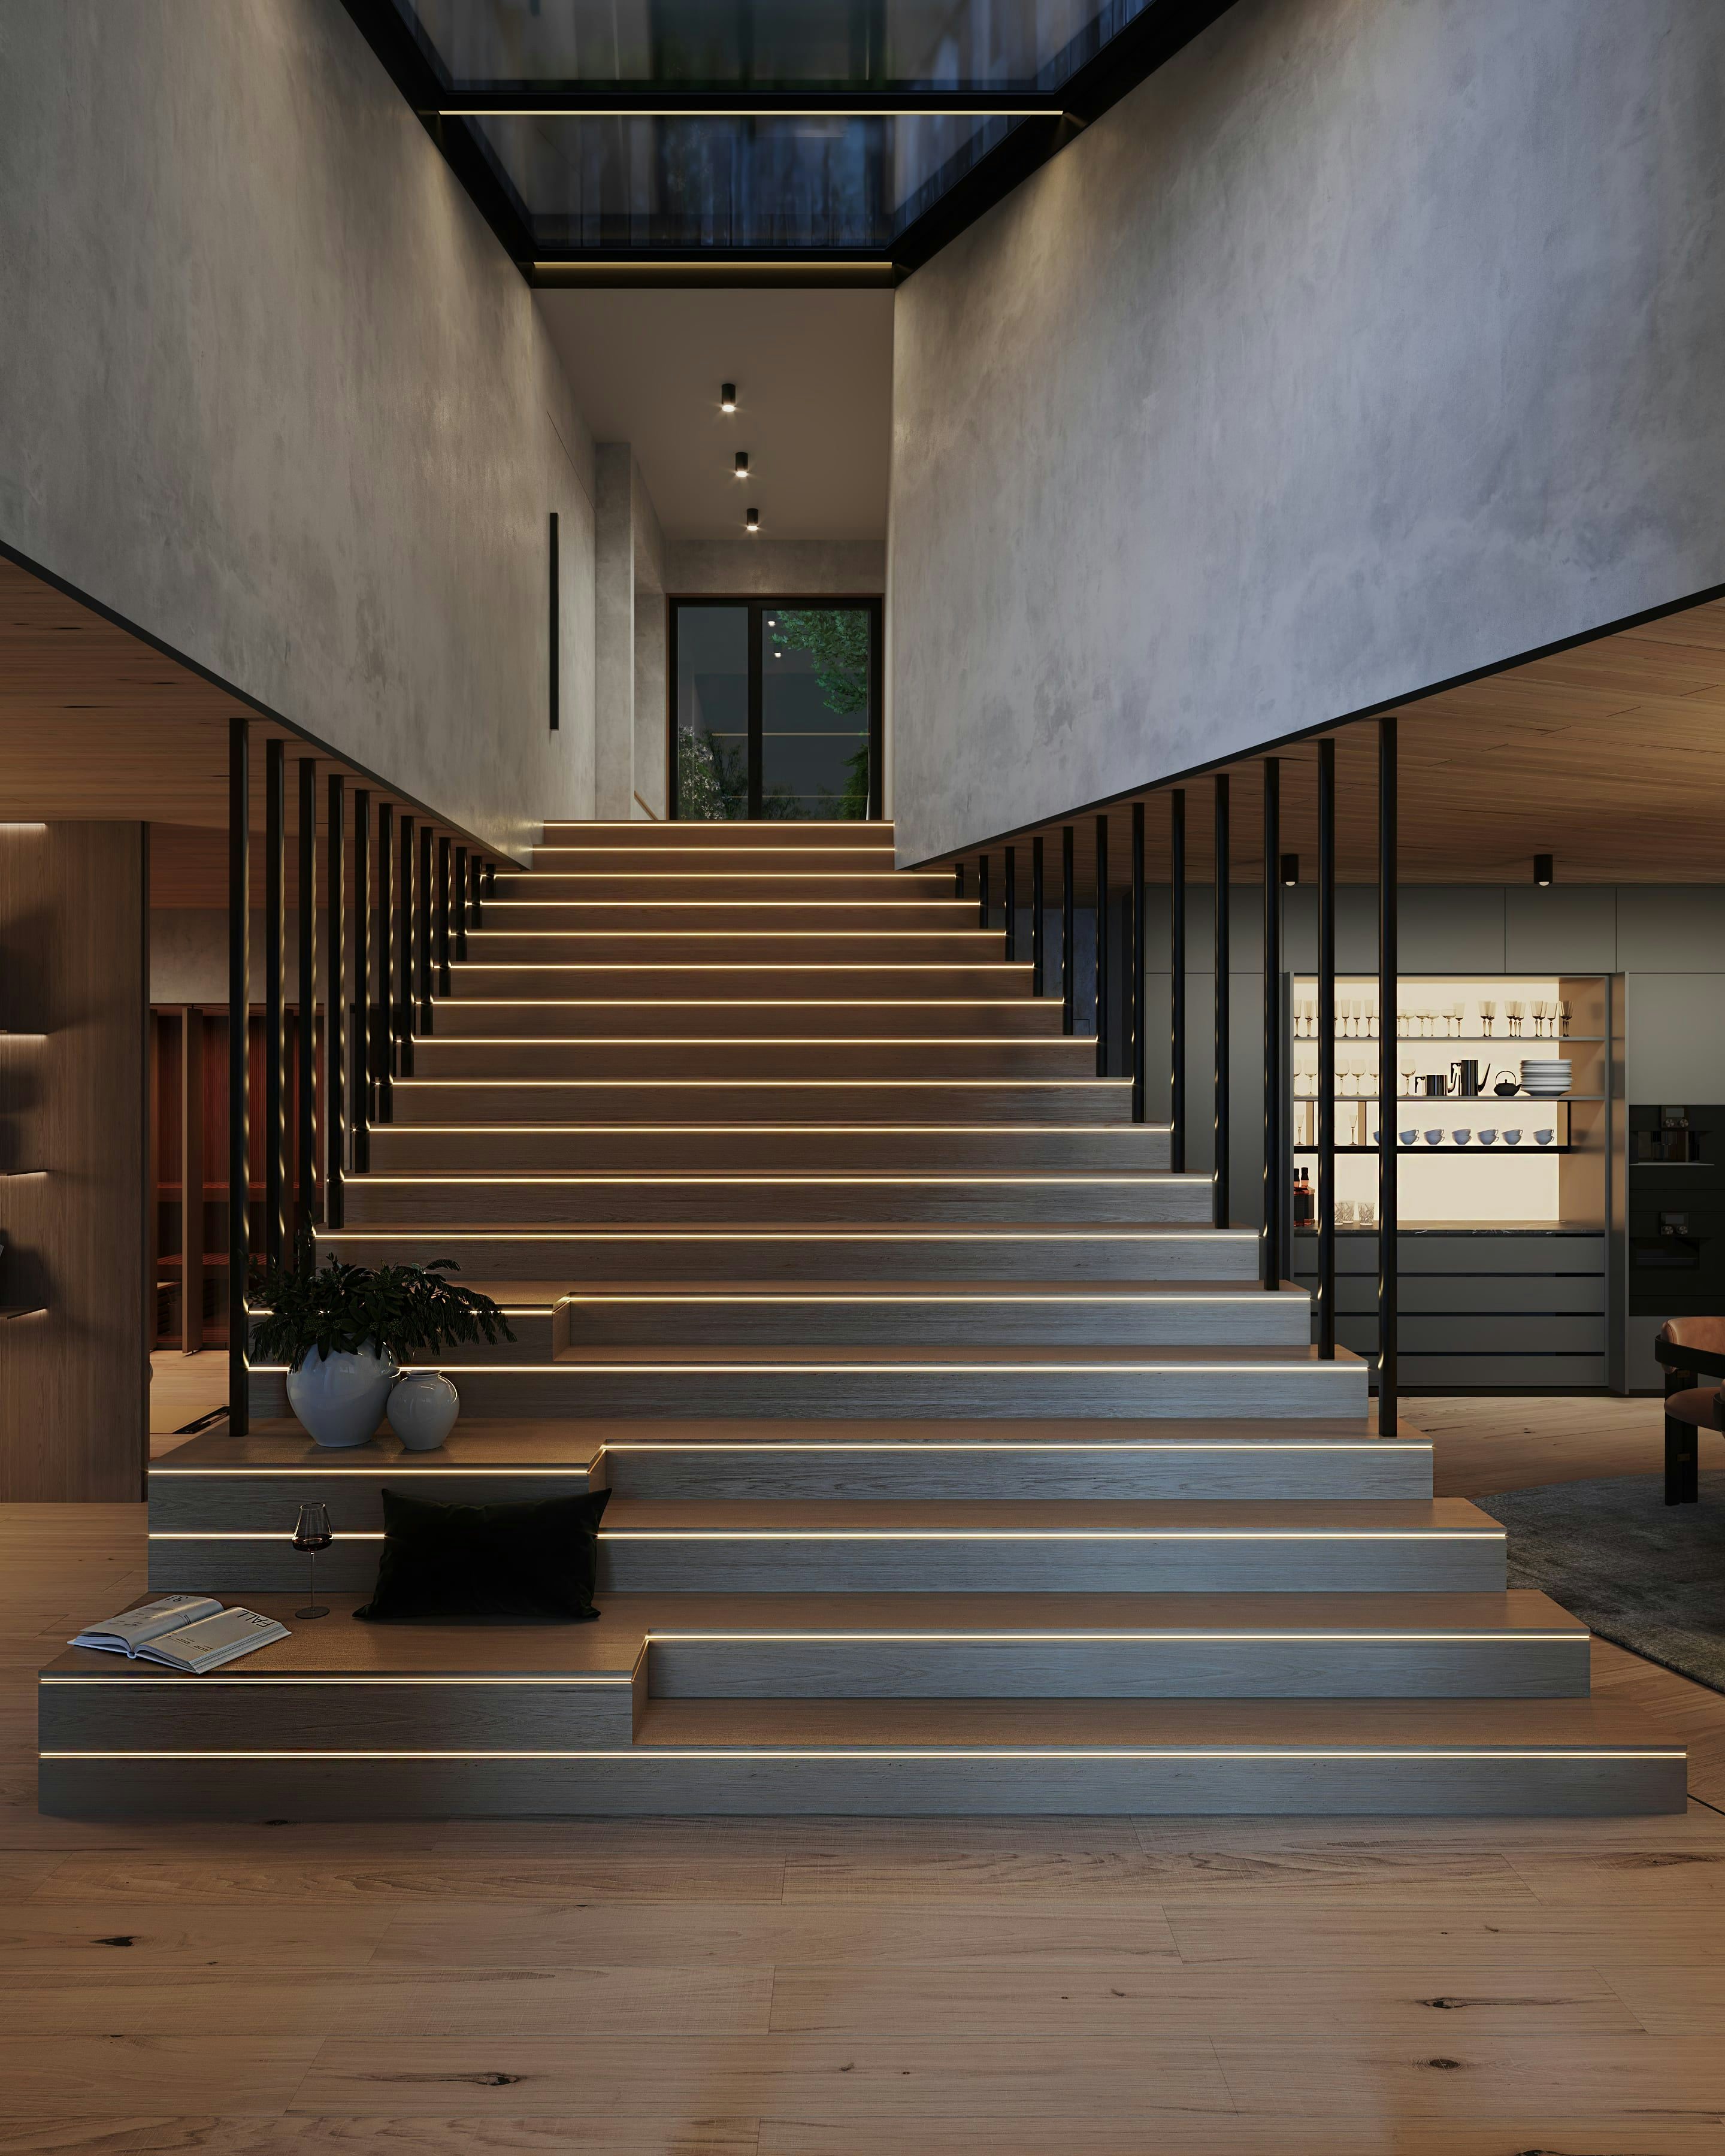 3D Innen Architekturvisualisierung von Treppen in einem Privathaus in Berlin, Deutschland